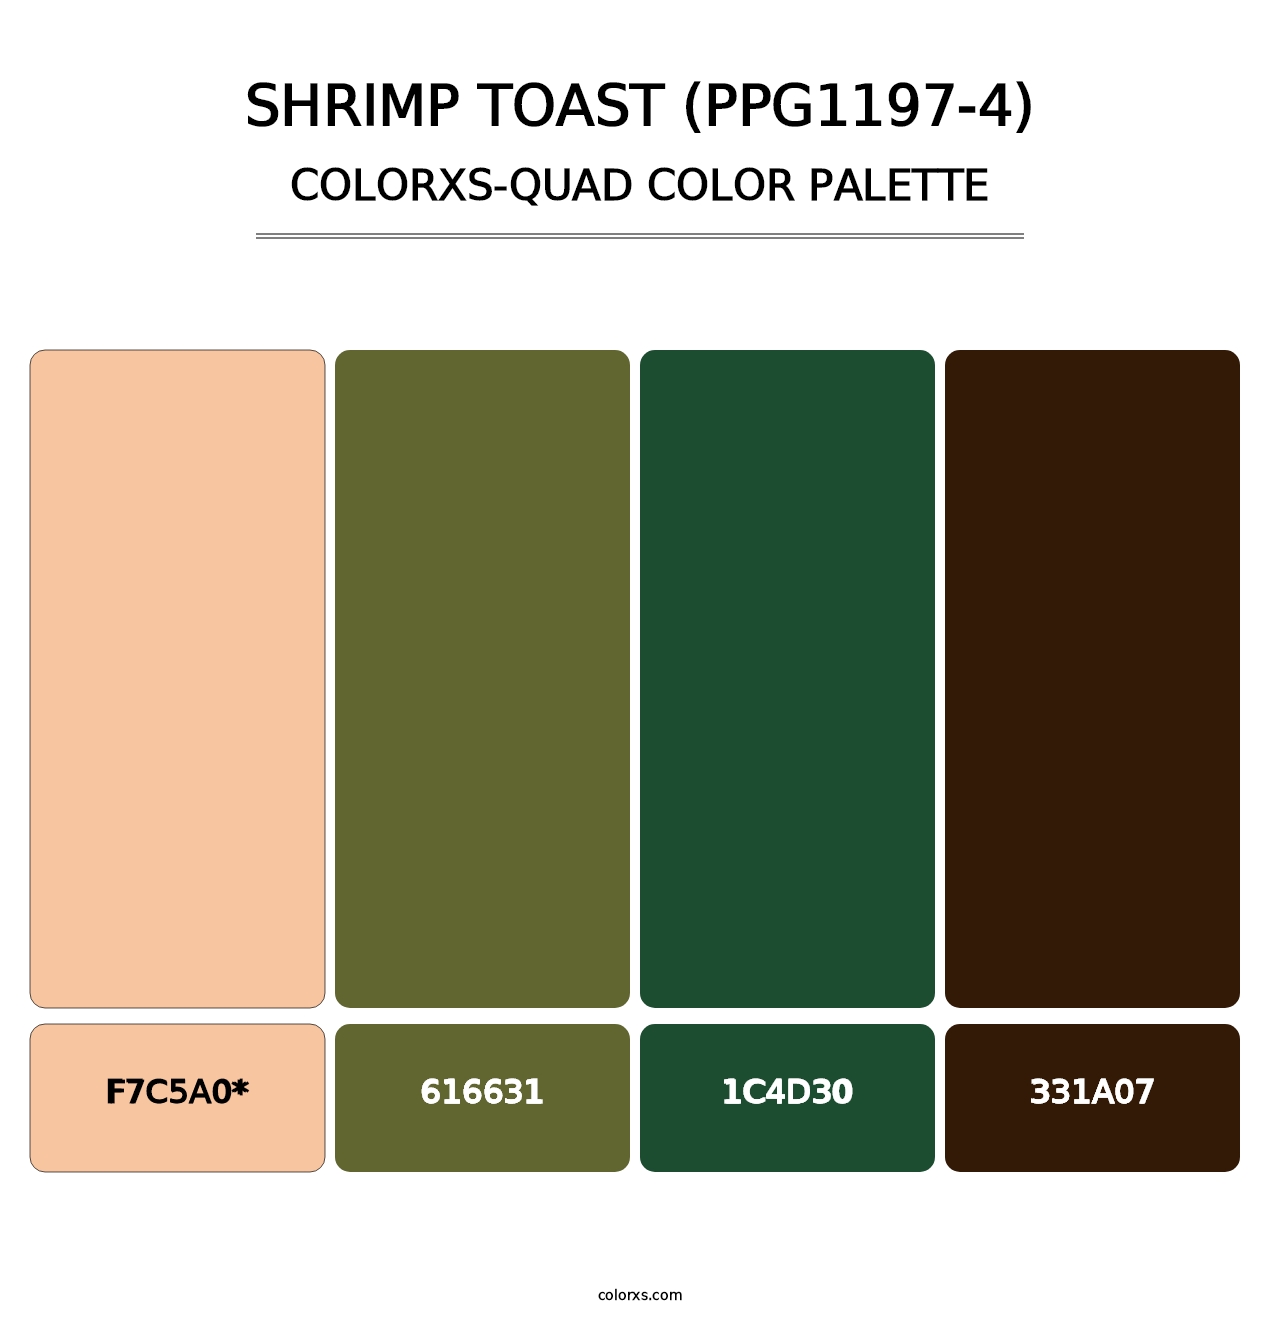 Shrimp Toast (PPG1197-4) - Colorxs Quad Palette